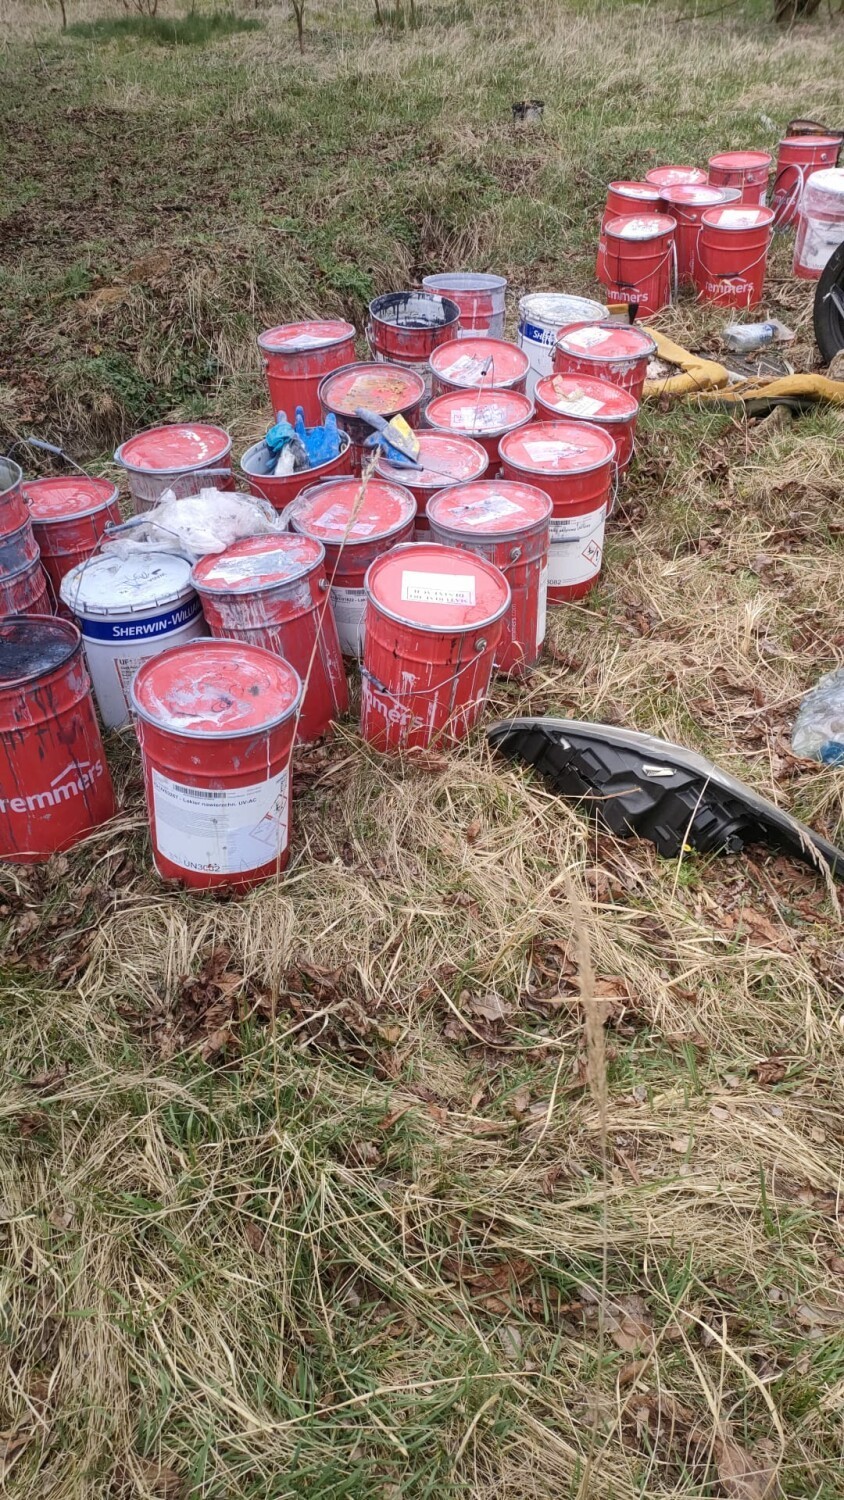 140 puszek z nieznaną substancją znaleziono na opuszczonej posesji. Strażacy zabezpieczyli teren